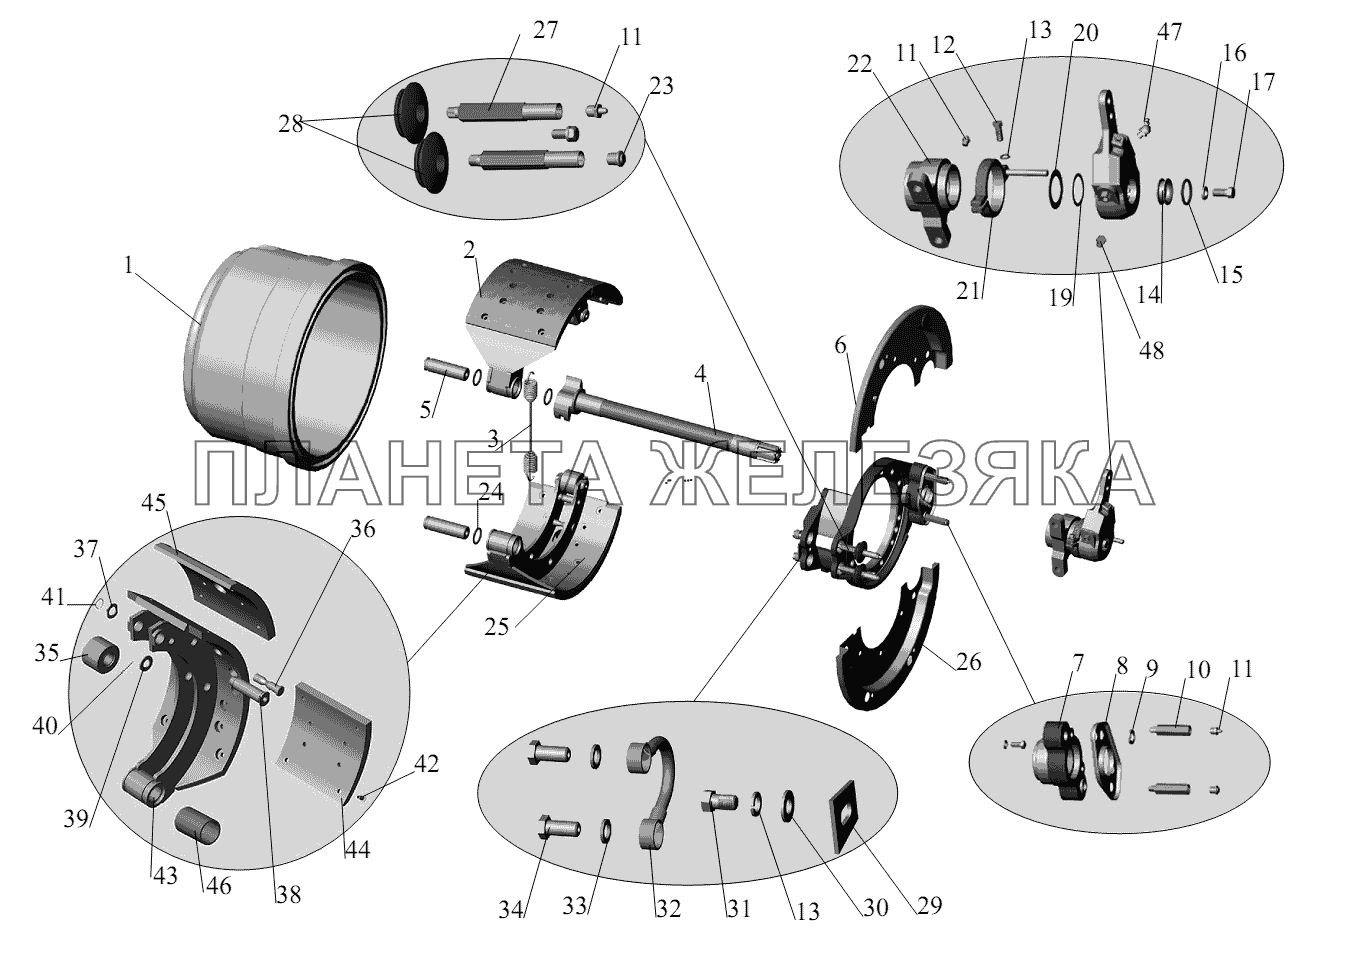 Тормозной механизм колес заднего и среднего мостов (для барабана диаметром 410 мм, с шириной накладок 220 мм) МАЗ-6422, 5432